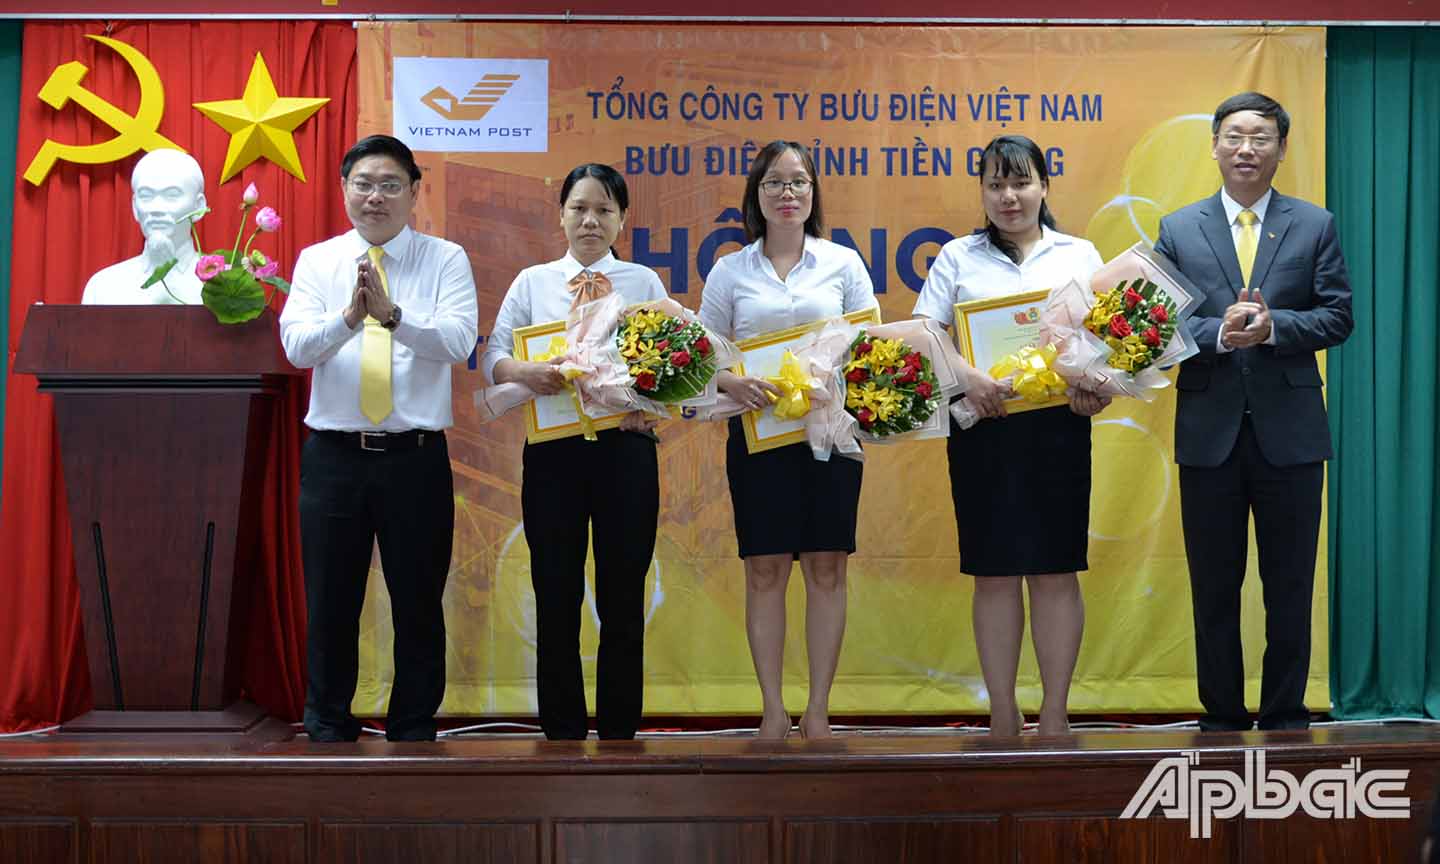 Lãnh đạo Tổng Công ty Bưu điện Việt Nam trao giấy khen cho Bưu điện tỉnh Tiền Giang và các đơn vị trực thuộc.